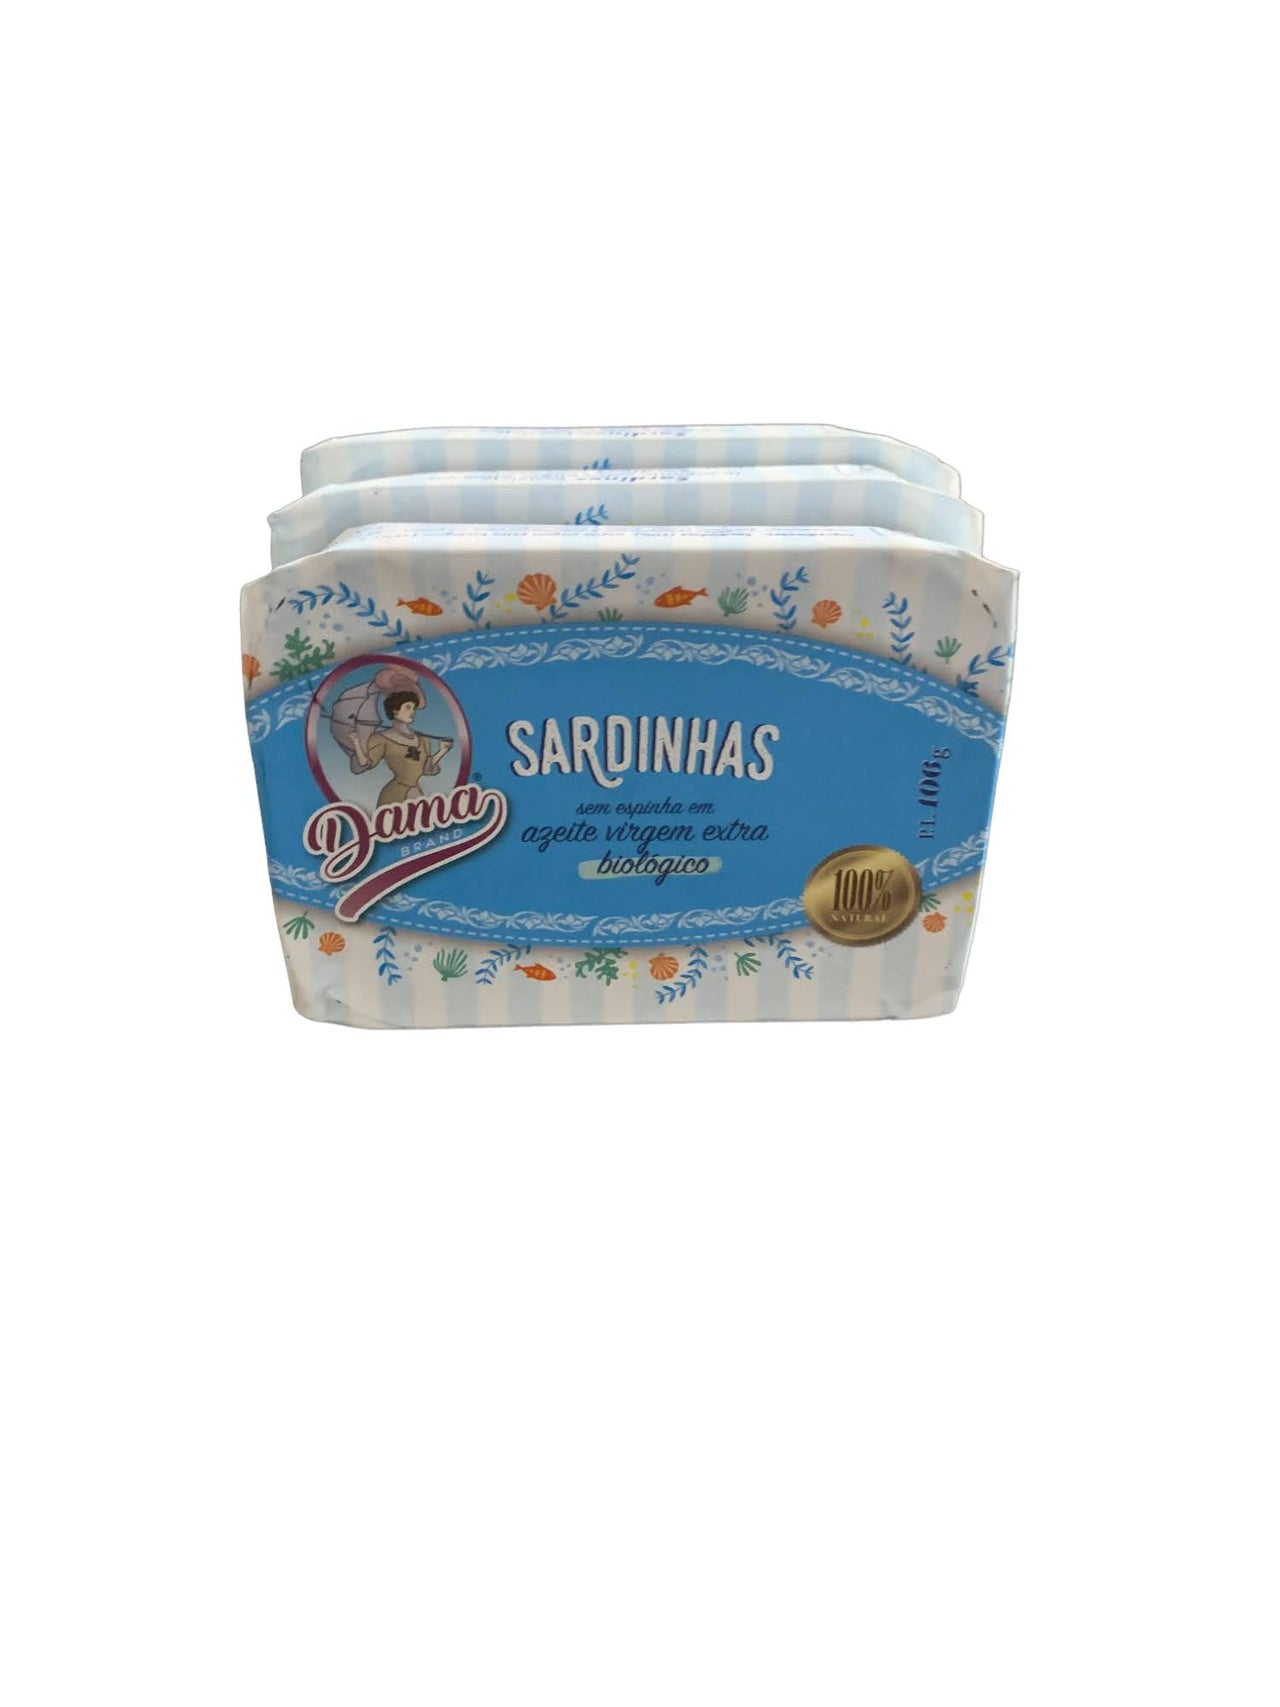 Dama Brand Boneless Sardines in EVOO - 3 Pack - TinCanFish